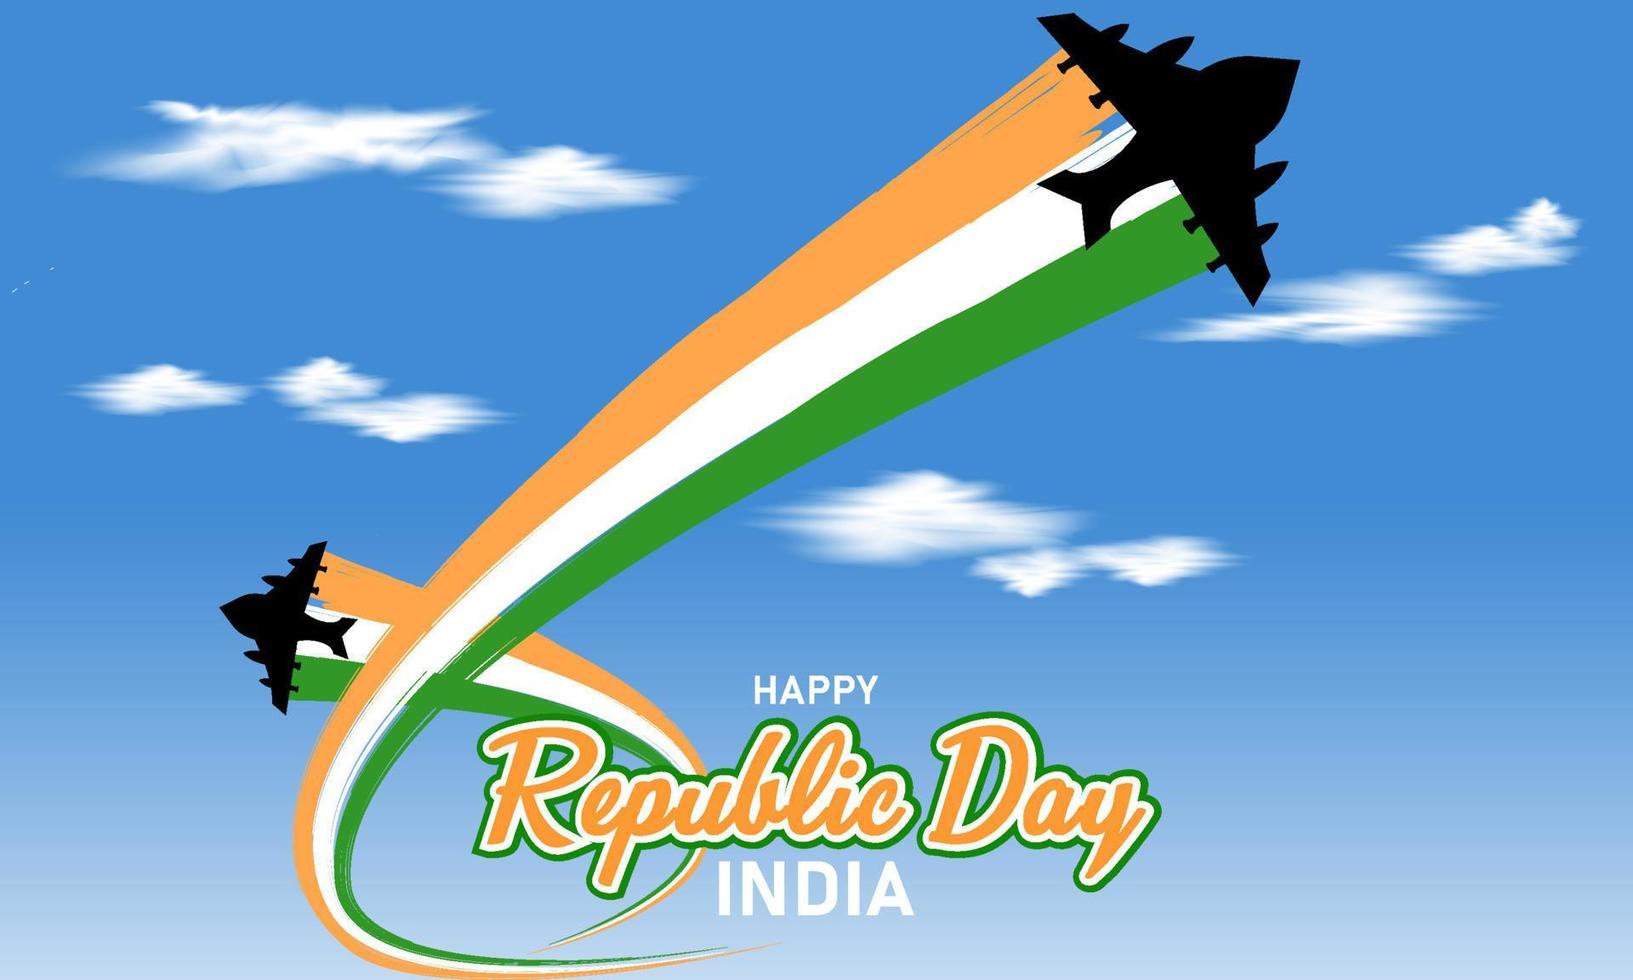 repubblica giorno celebrazione illustrazione, con combattente Jet illustrazione e indiano bandiera colori ondulato contro bianca cielo e nuvole sfondo vettore